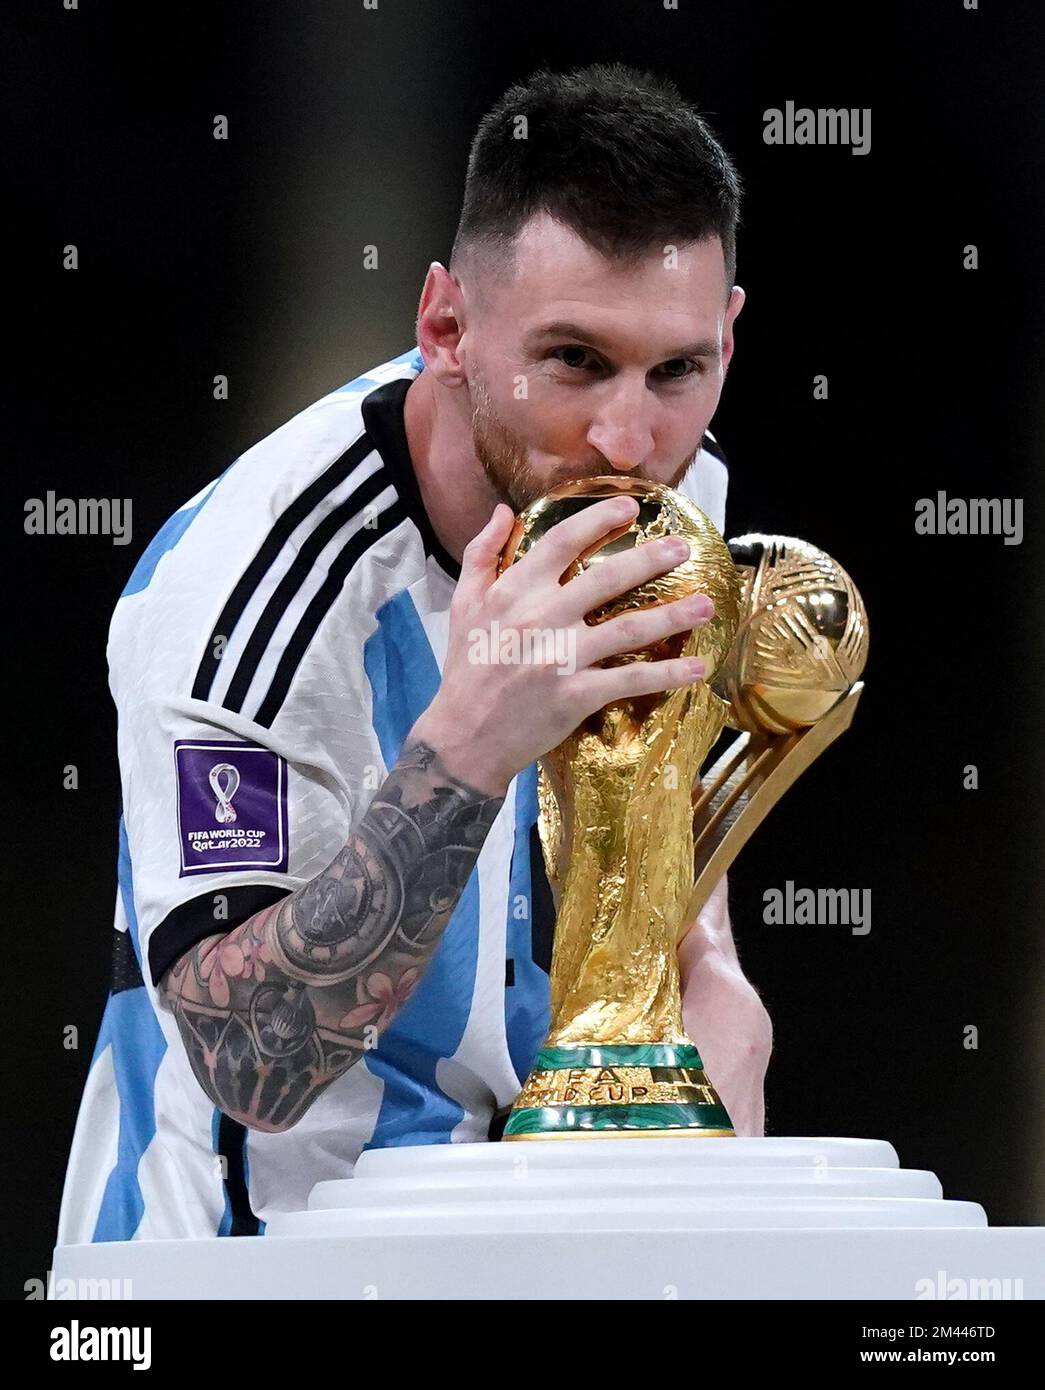 Lionel Messi d'Argentine embrasse le trophée de la coupe du monde de la FIFA après avoir reçu le Golden ball Award après la victoire à la finale de la coupe du monde de la FIFA au stade Lusail, au Qatar. Date de la photo: Dimanche 18 décembre 2022. Banque D'Images